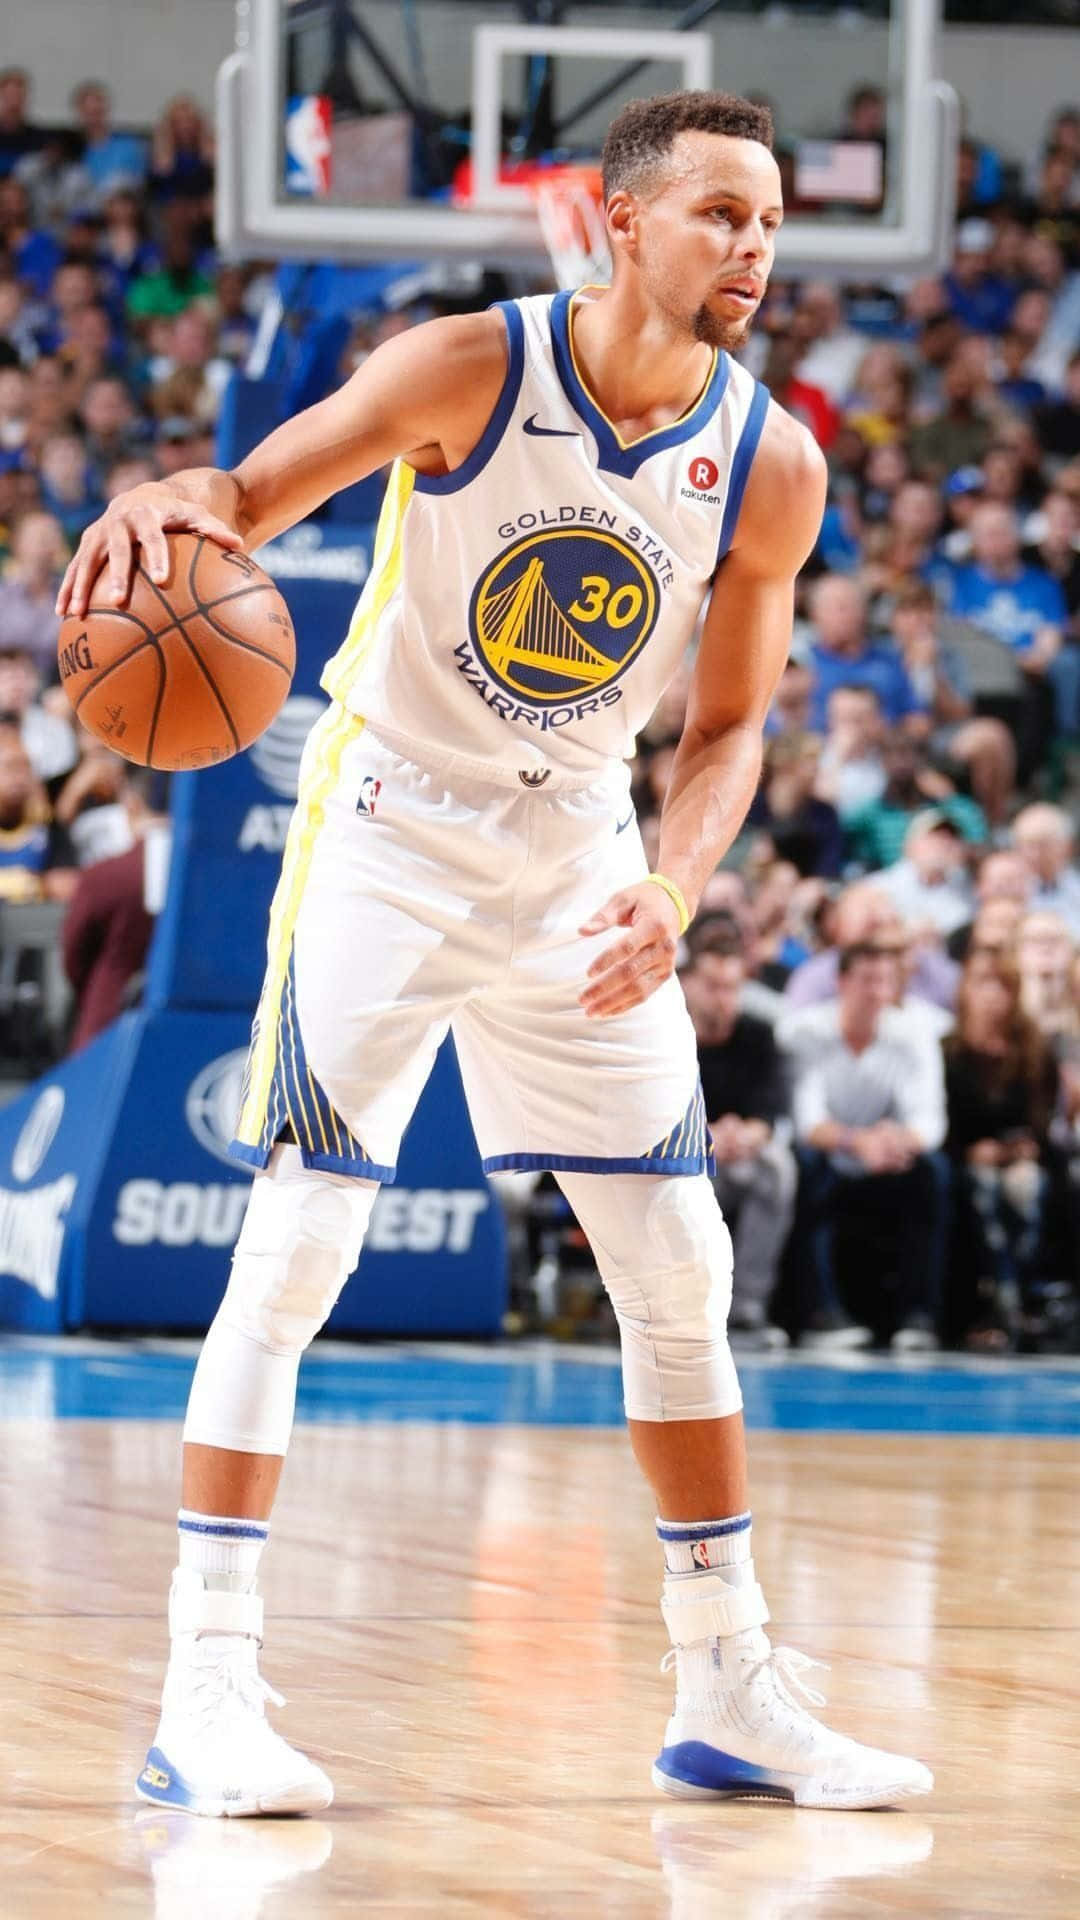 Derlegendäre Basketballspieler Stephen Curry Erfüllt Seinen Mvp-titel.